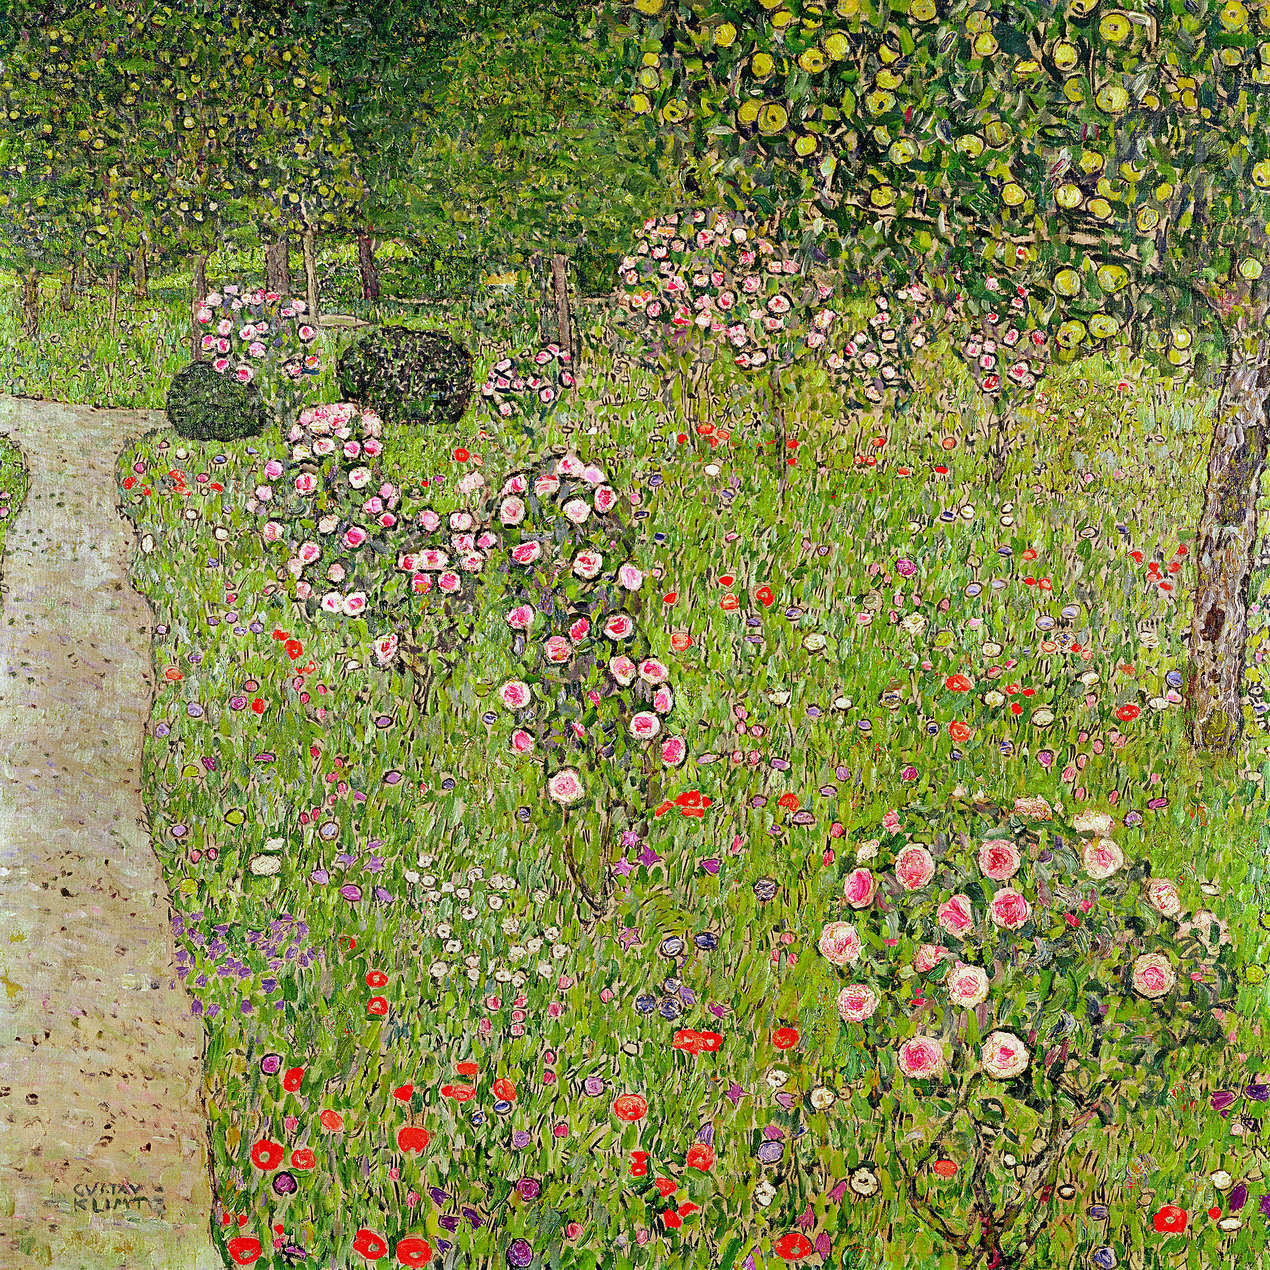             Papier peint panoramique "Verger avec roses" de Gustav Klimt
        